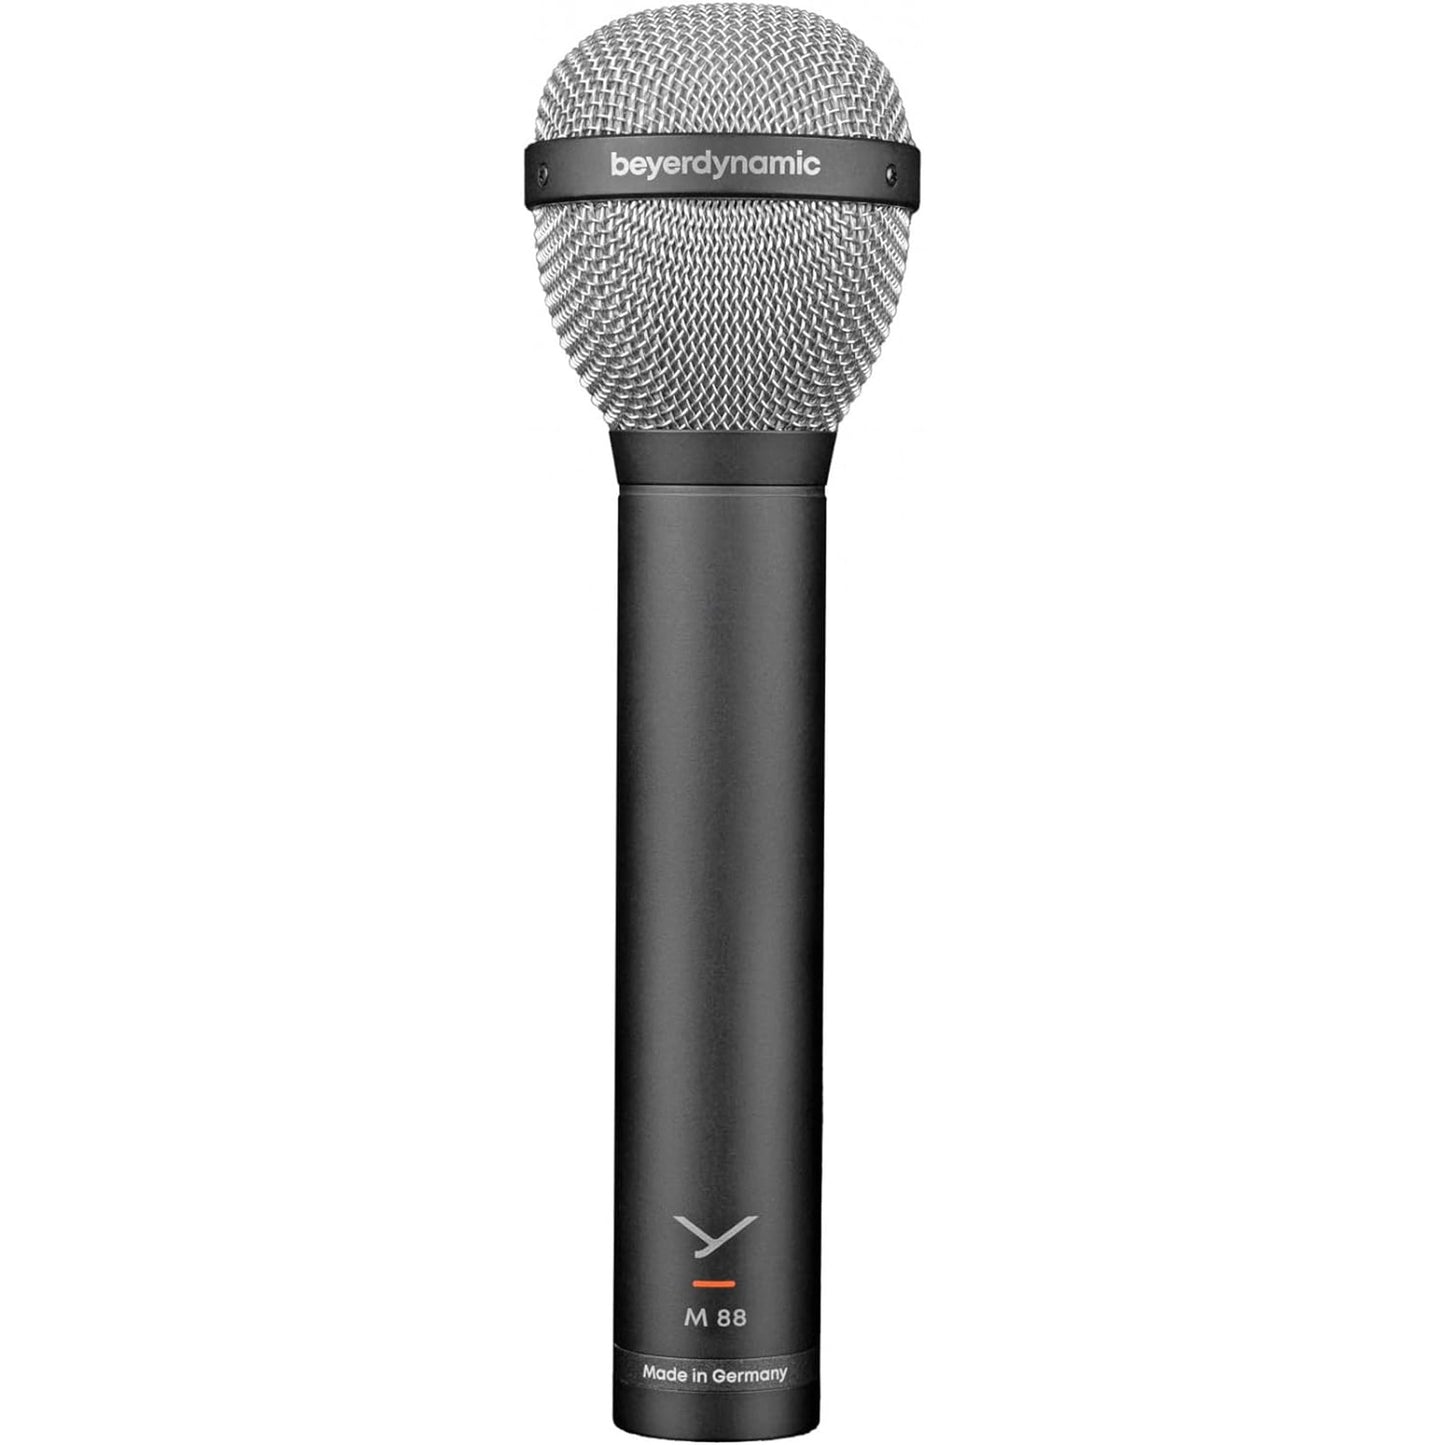 Beyerdynamic M 88 Hypercardioid Dynamic Microphone